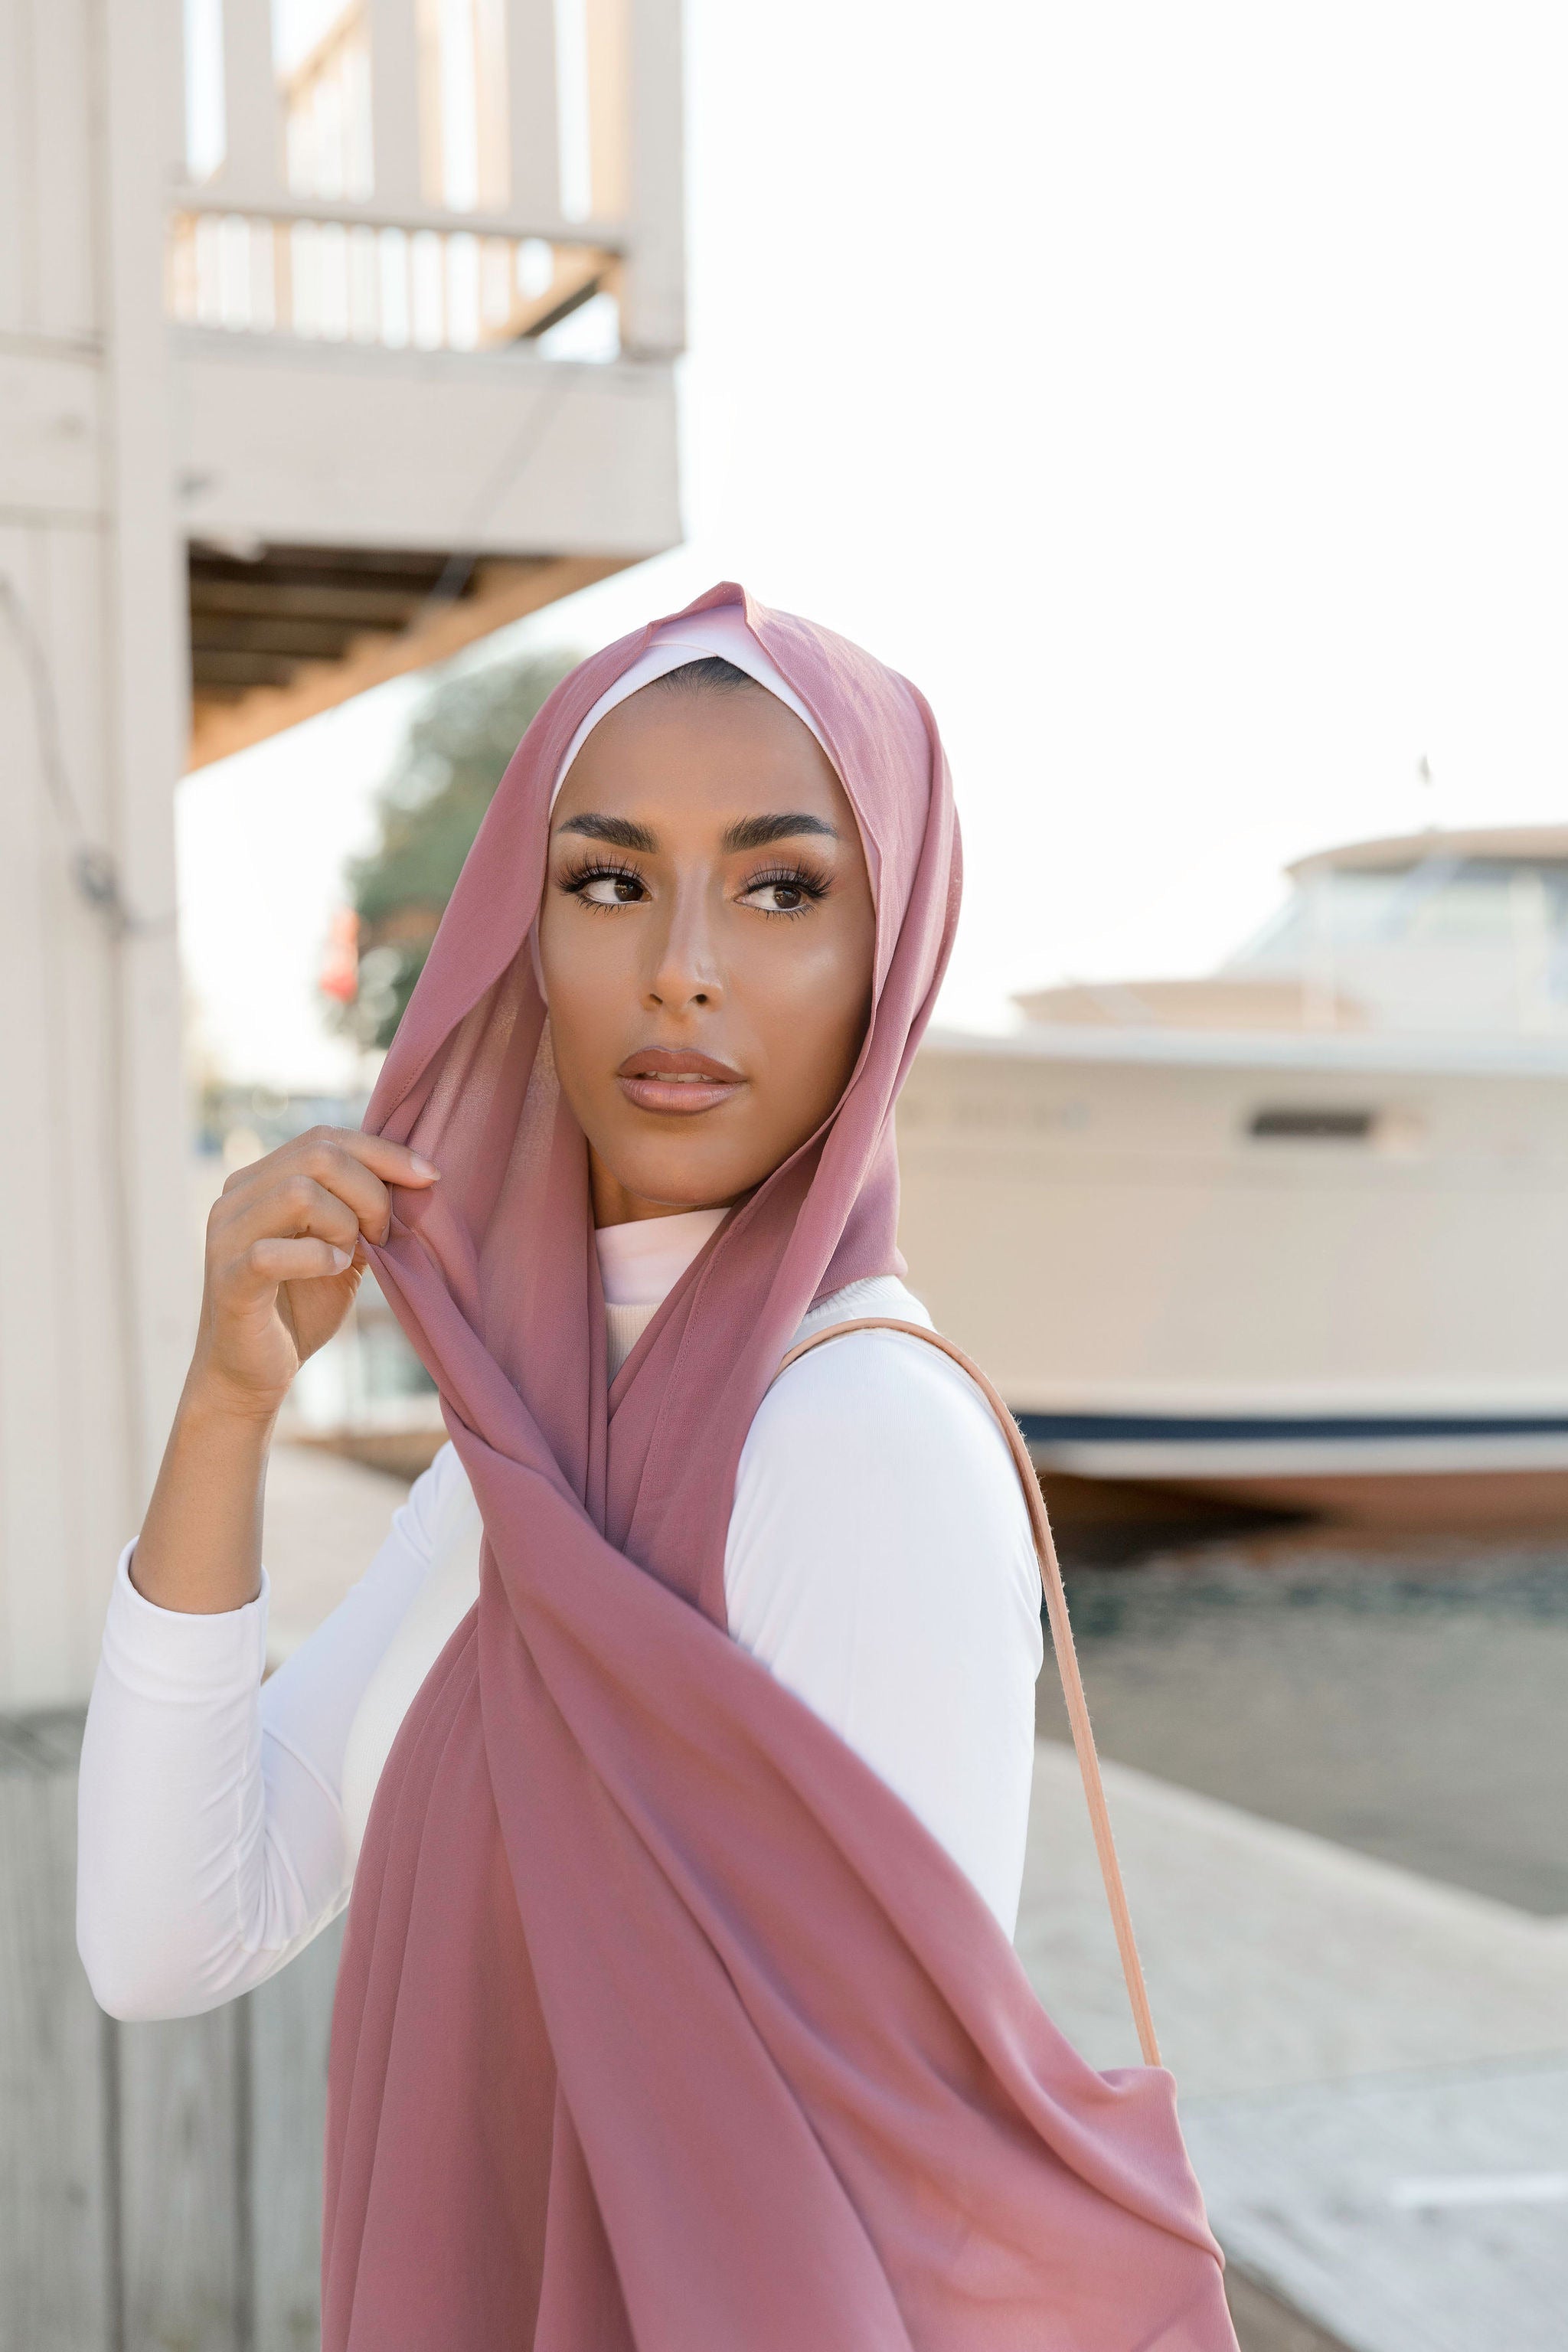 Premium Chiffon Hijab - Blush